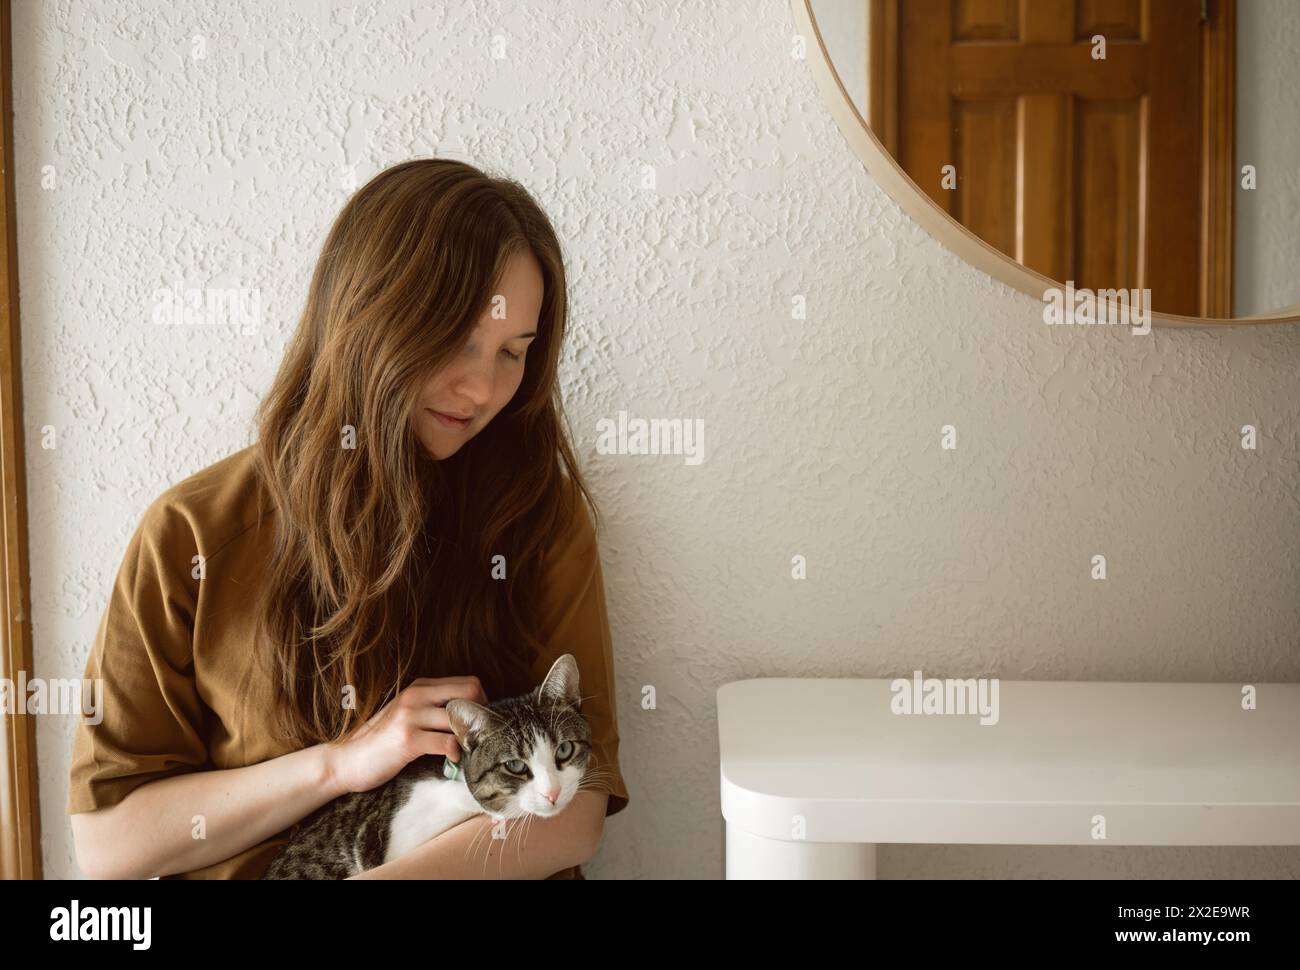 Una donna seduta accarezza il gatto in grembo in un interno minimalista con spazio per le copie Foto Stock